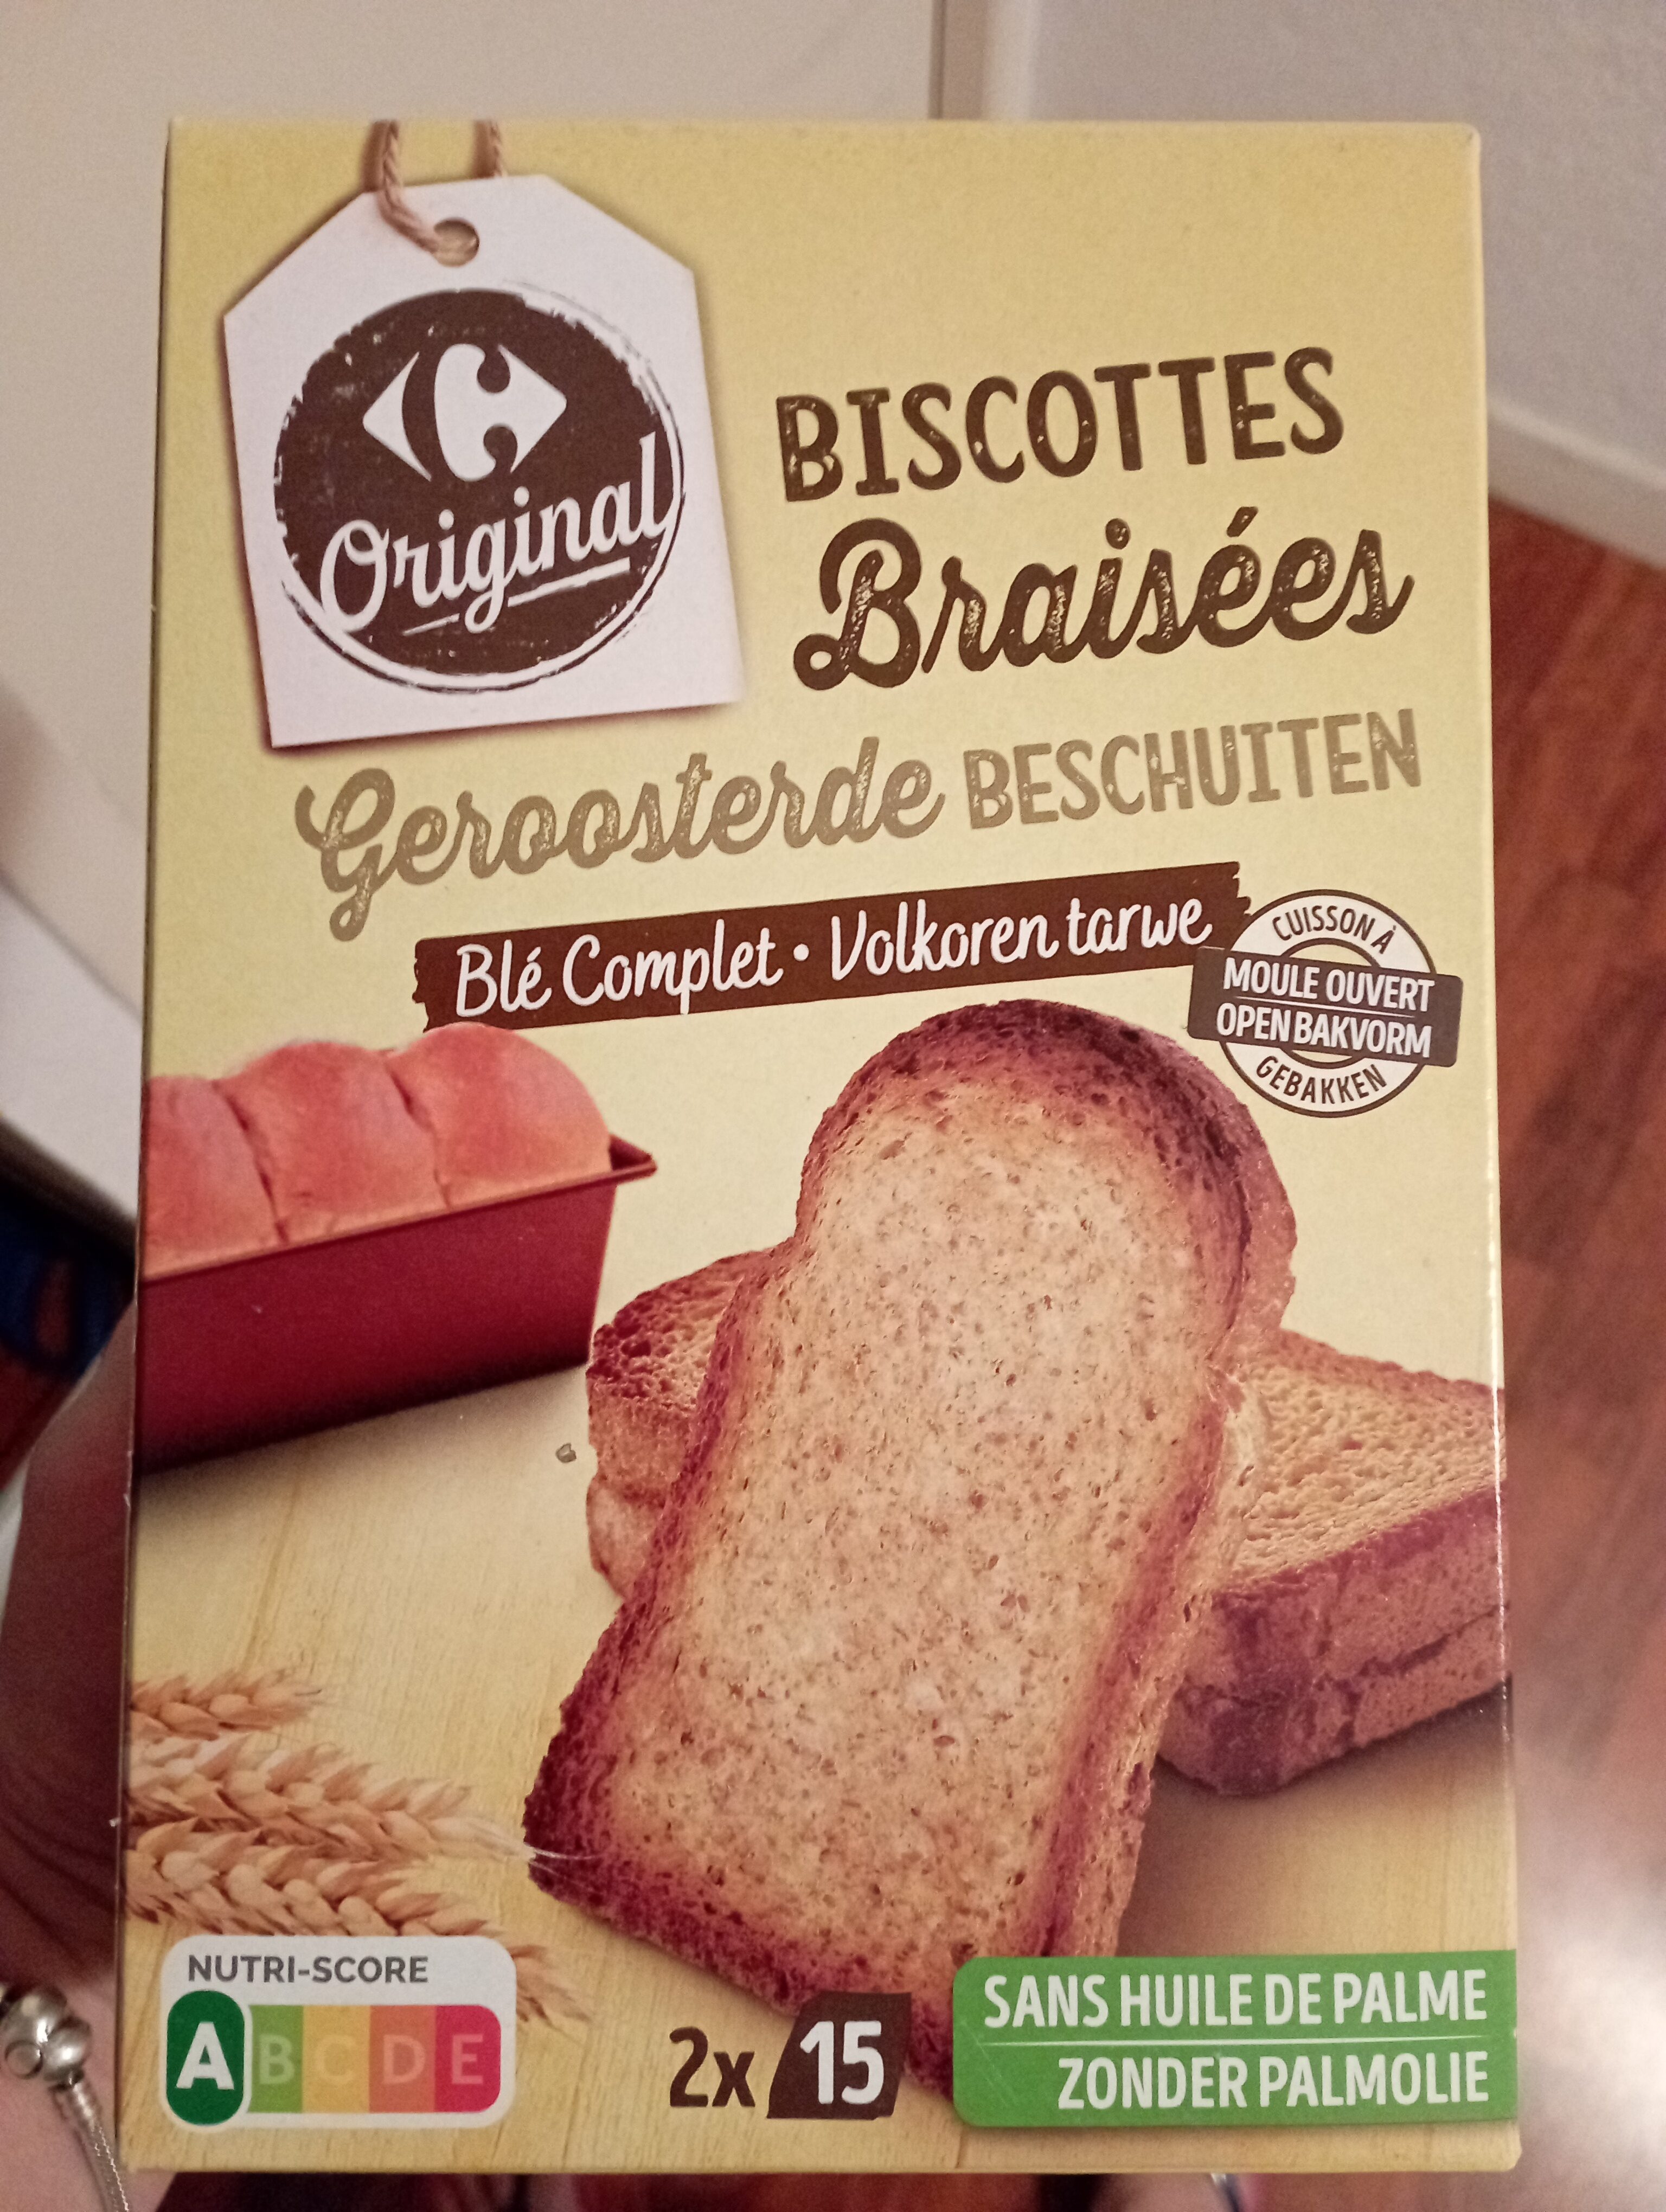 Biscottes braisées farine complete - Produit